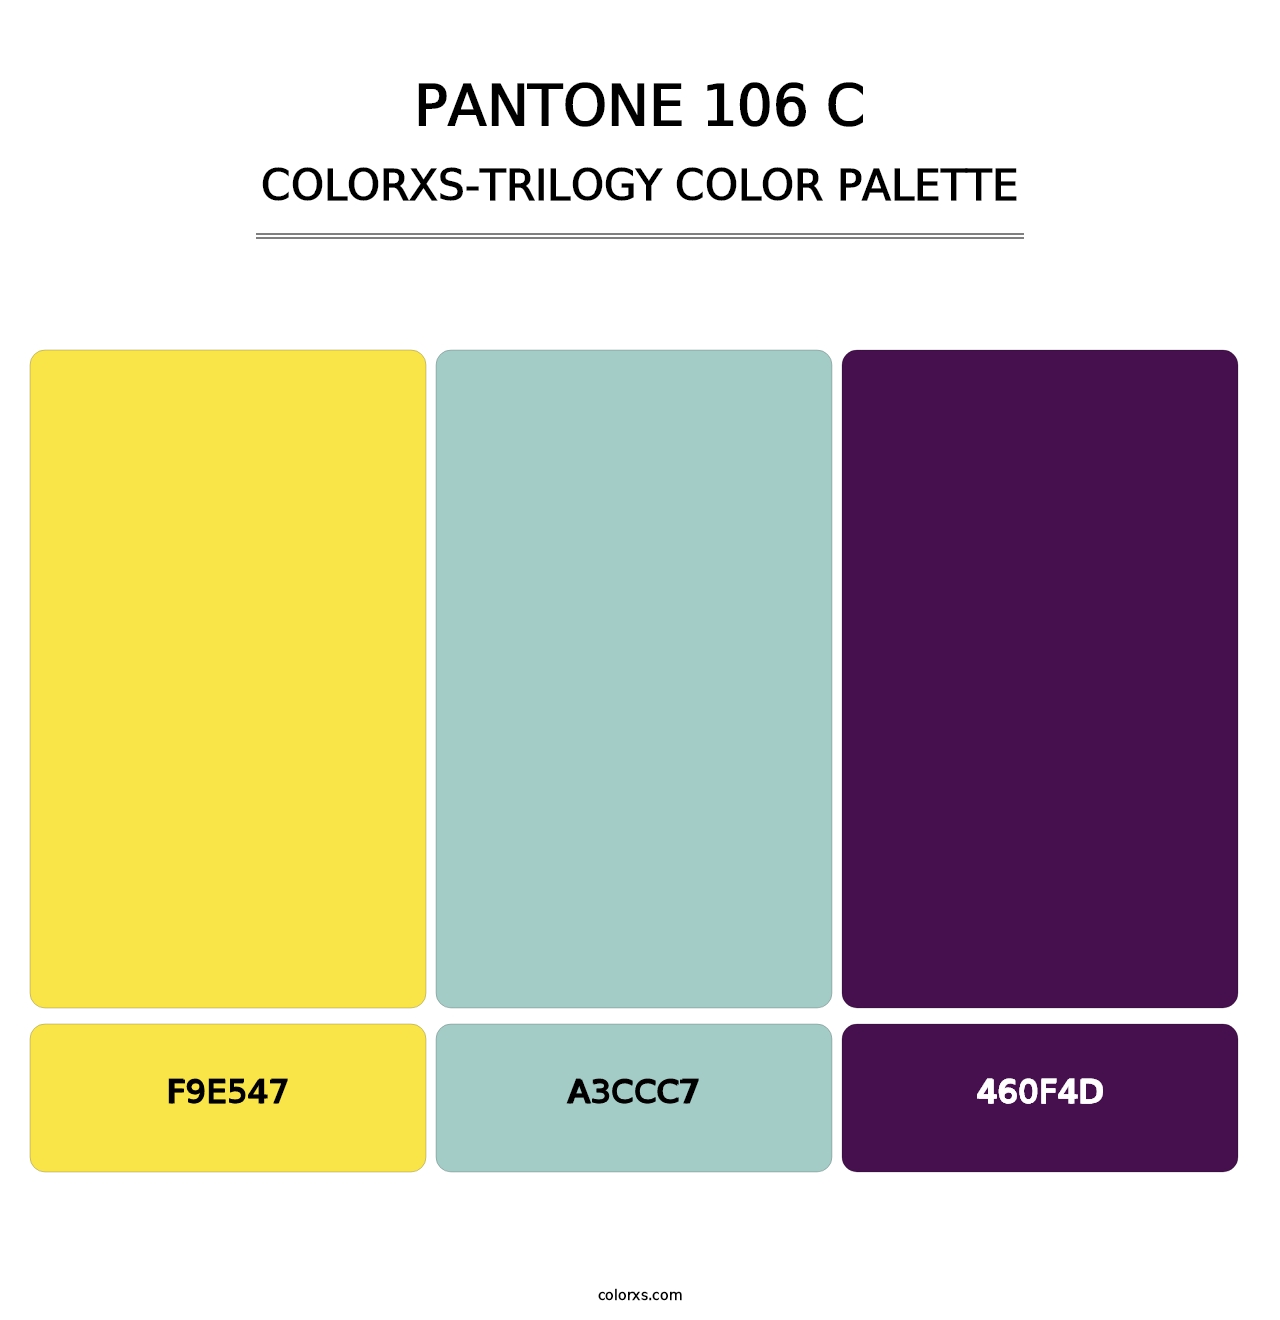 PANTONE 106 C - Colorxs Trilogy Palette